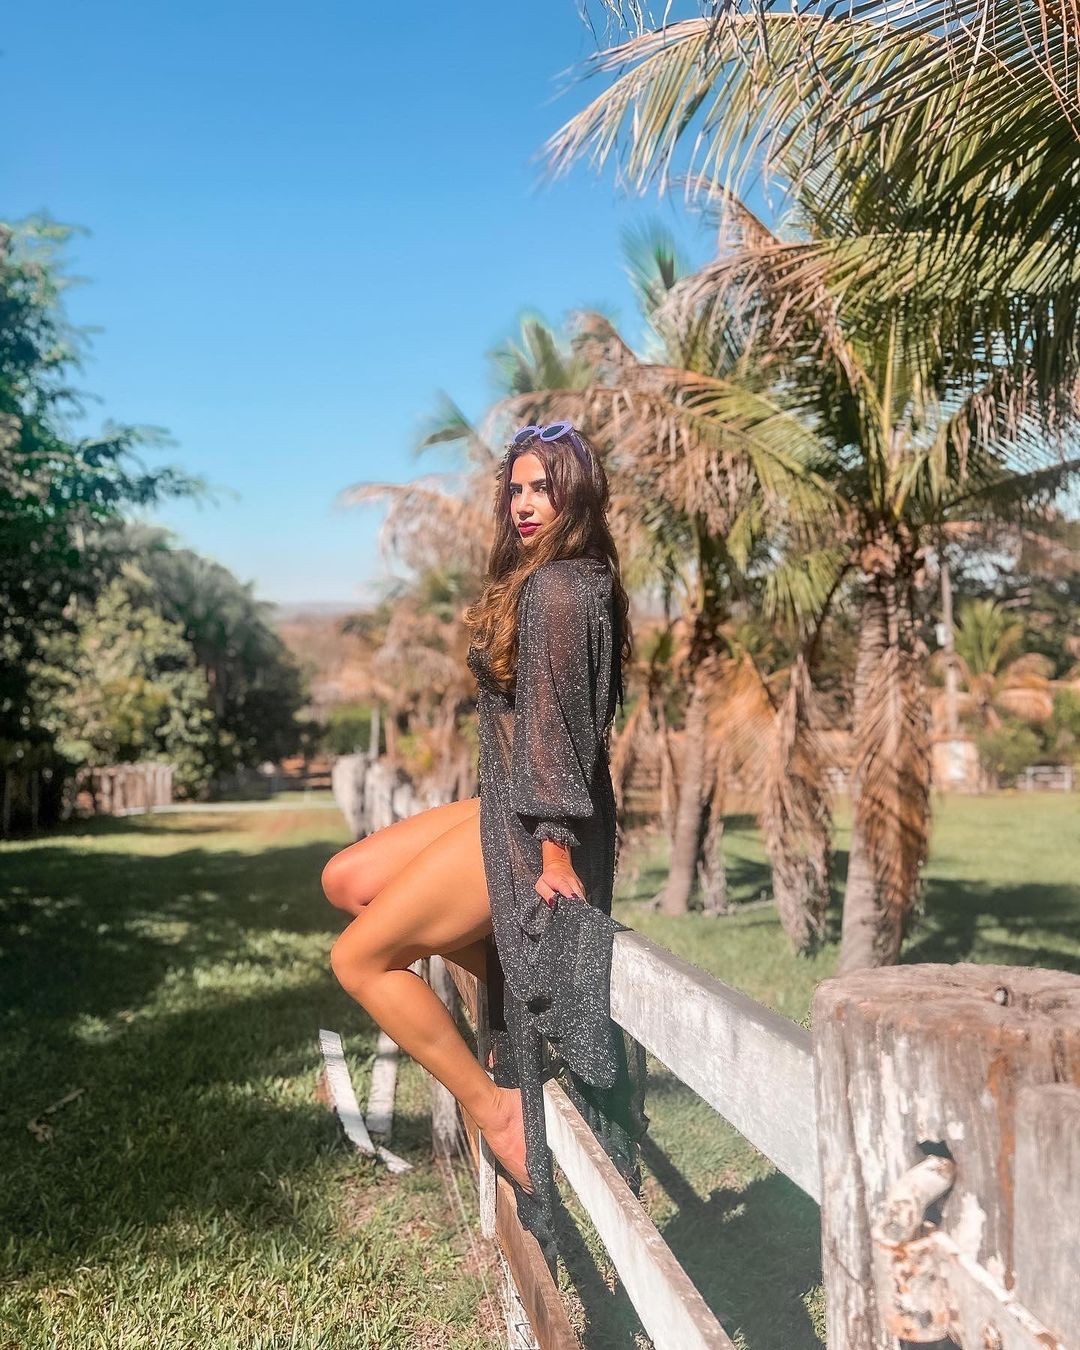 Jéssica Beatriz Costa posou de biquíni na fazenda do cantor Leonardo (Foto: Reprodução/Instagram)